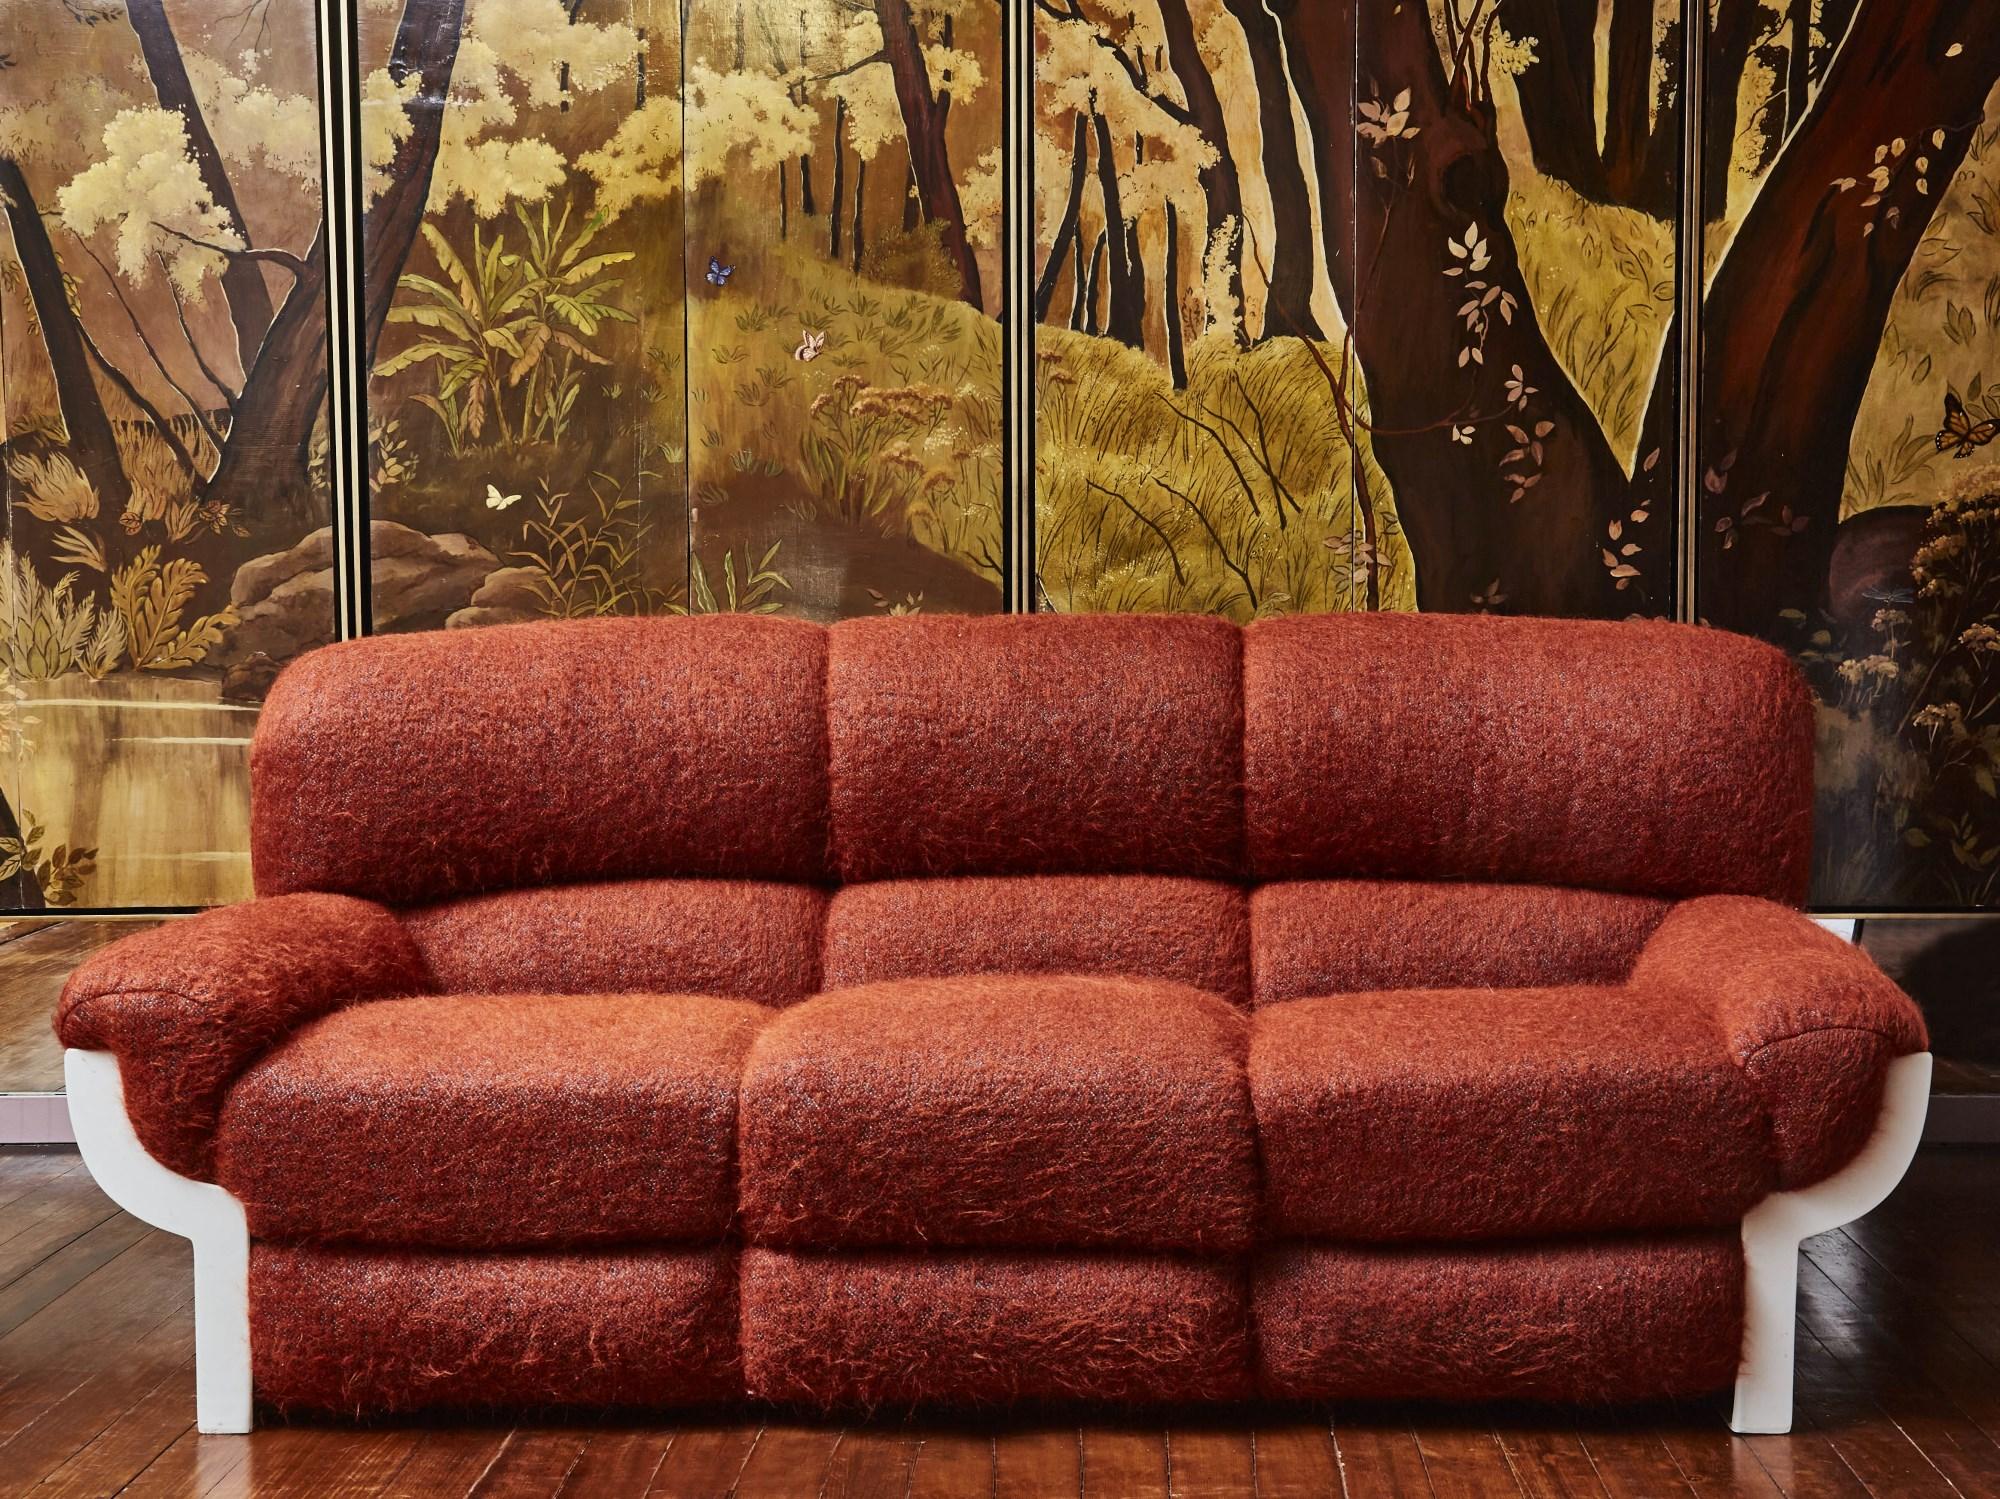 Wunderschönes 3-Sitzer-Sofa aus Fiberglas, komplett neu gepolstert mit einem Stoff von Pierre Frey.
Italien, 1970er Jahre